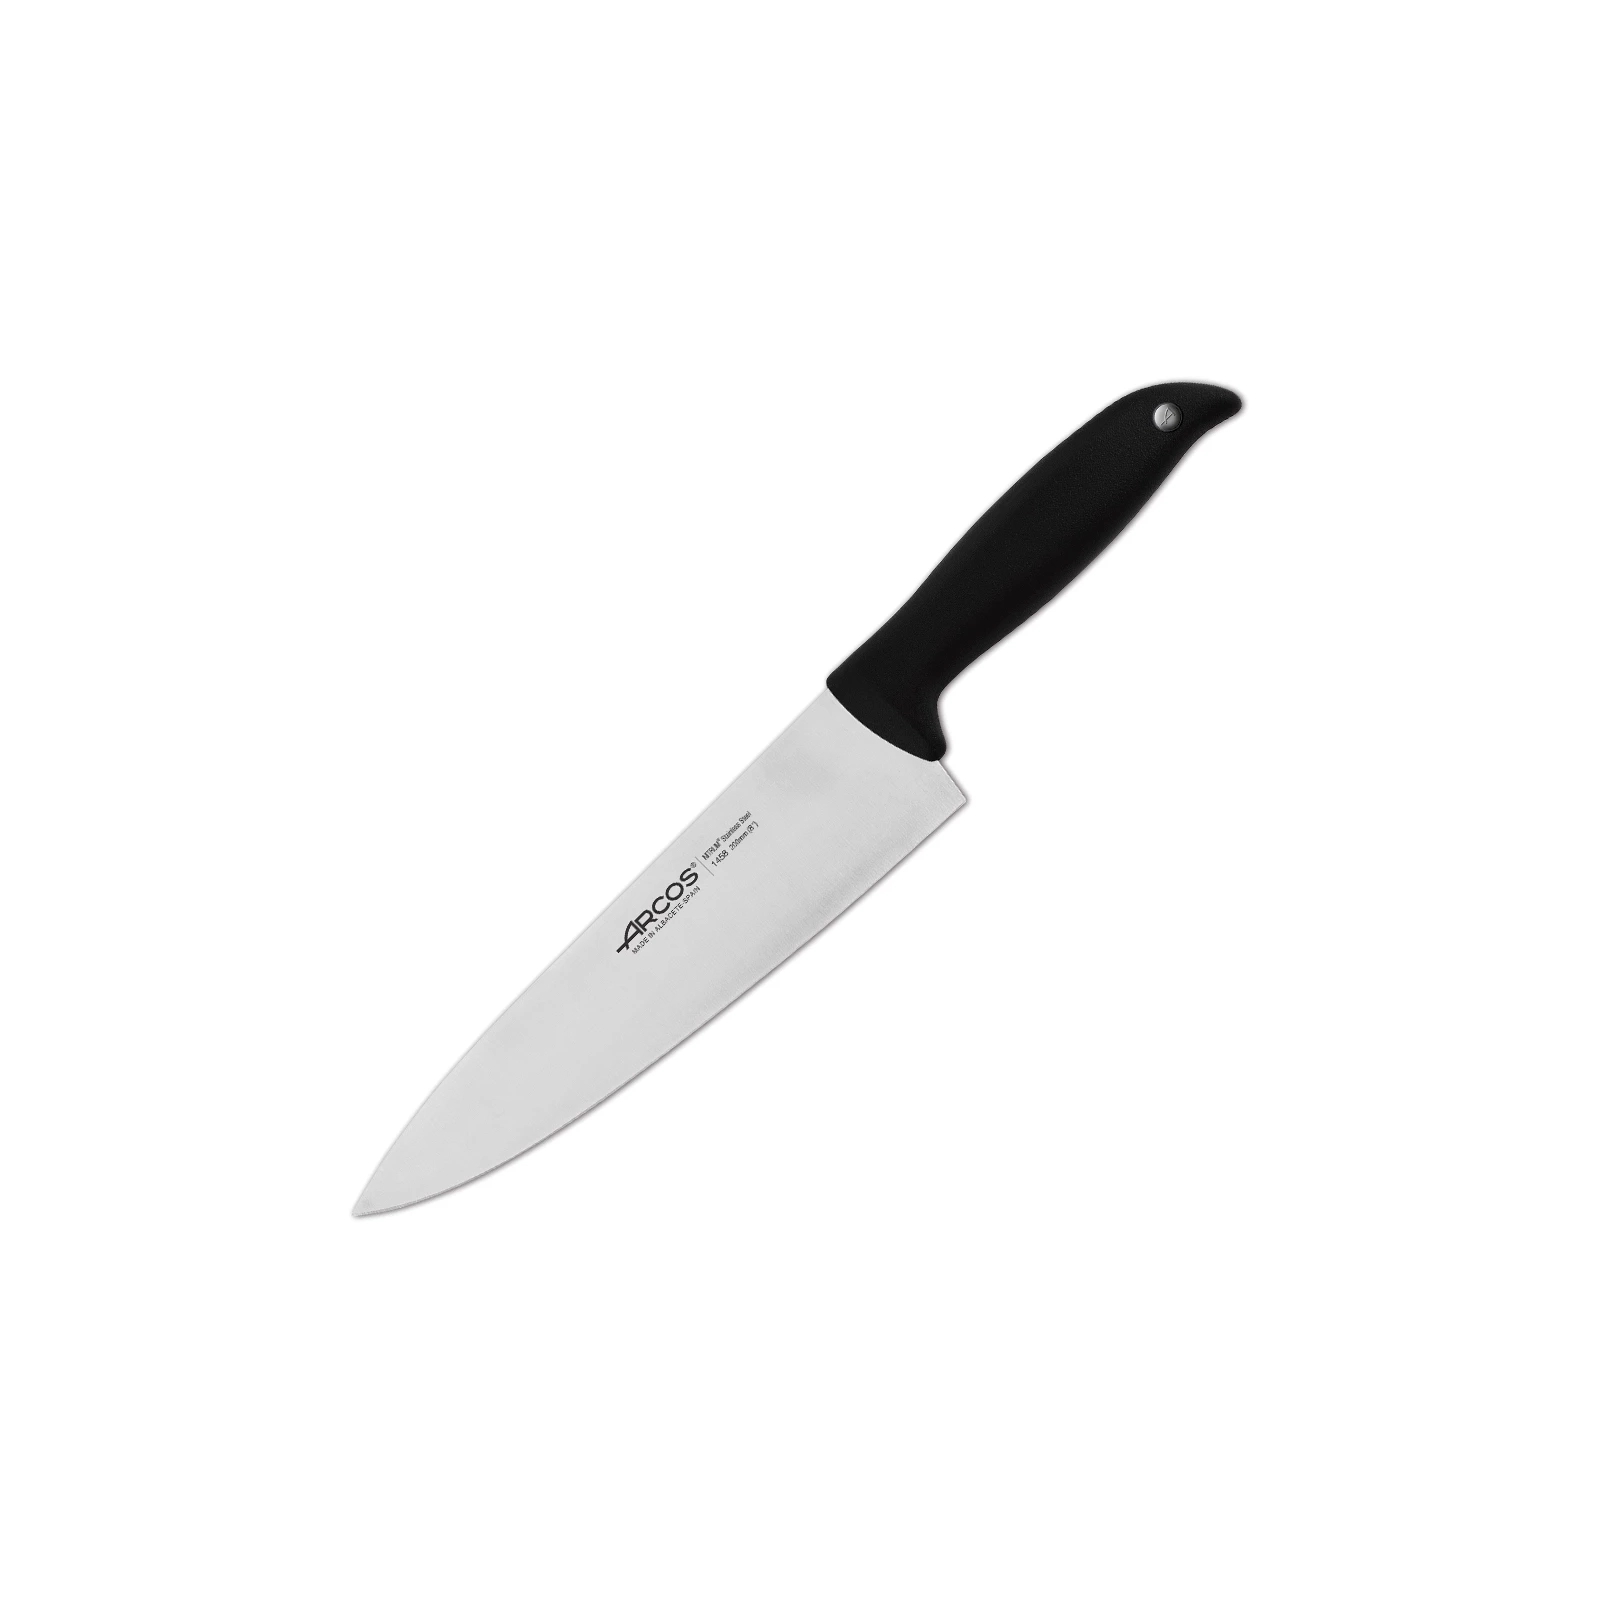 Кухонный нож Arcos Menorca кухарський 200 мм (145800)